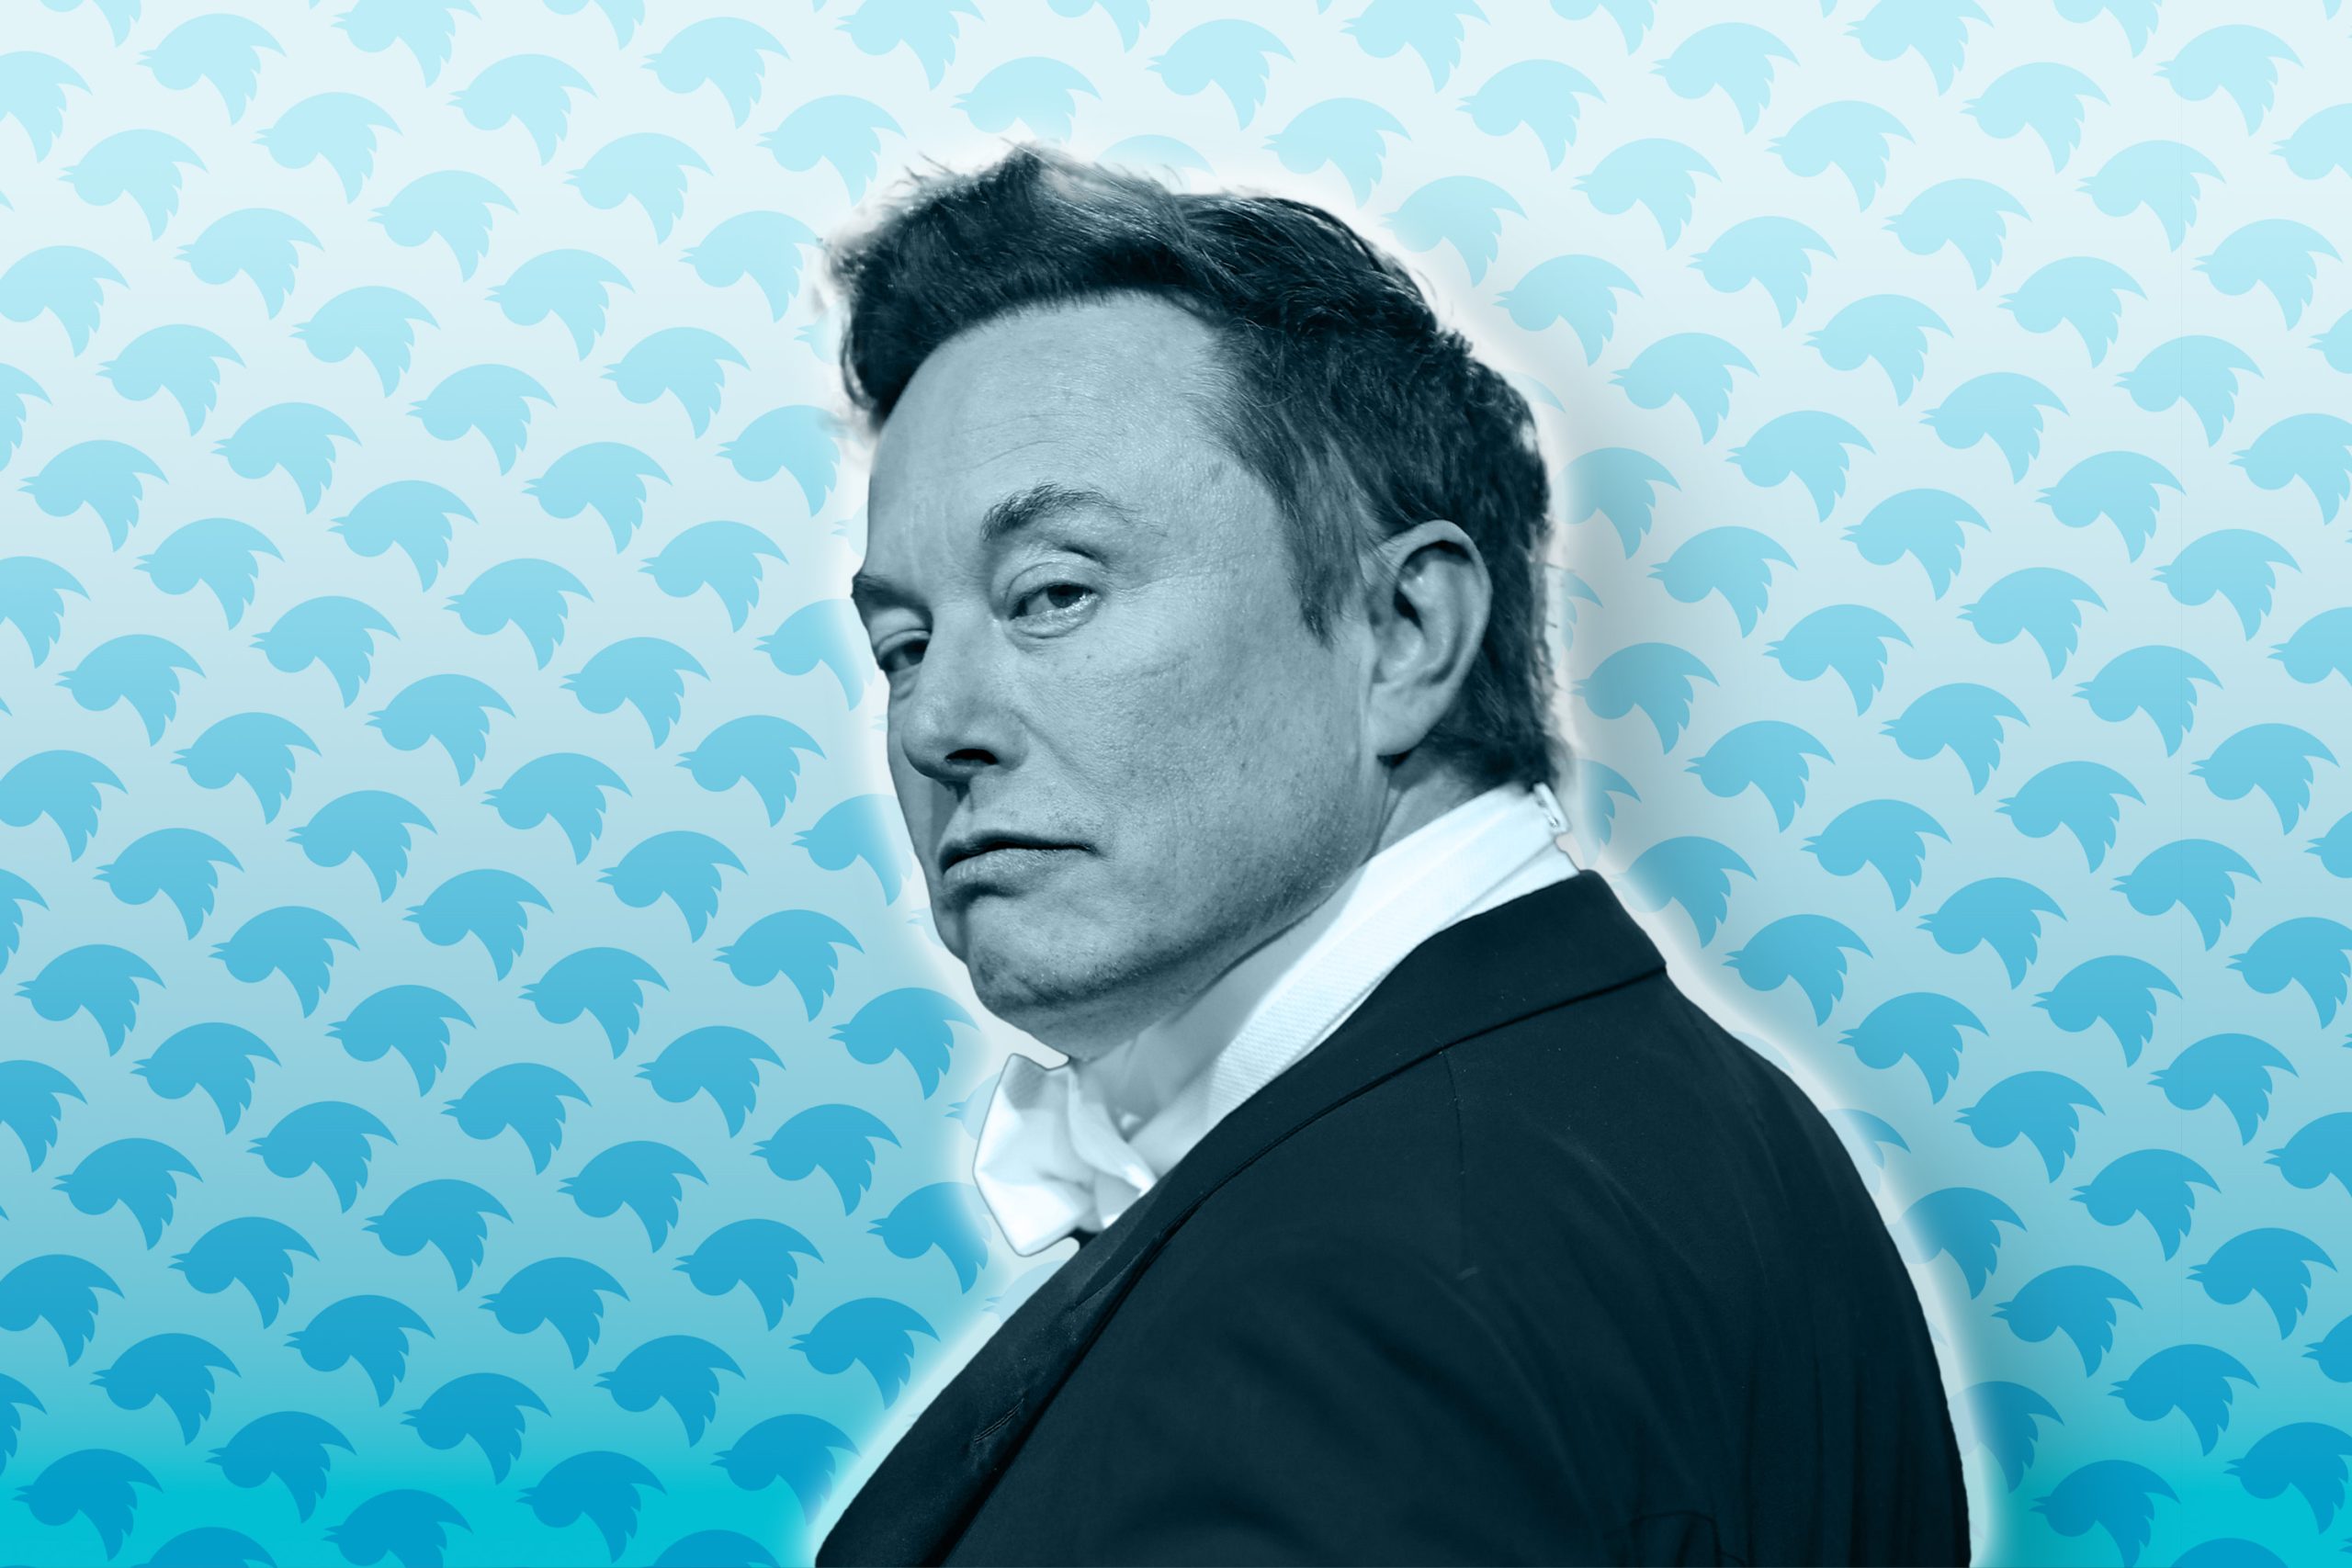 Elon Musk admet que ses commentaires nuisent à Twitter/X, alors qu'il fait face à un nouveau procès